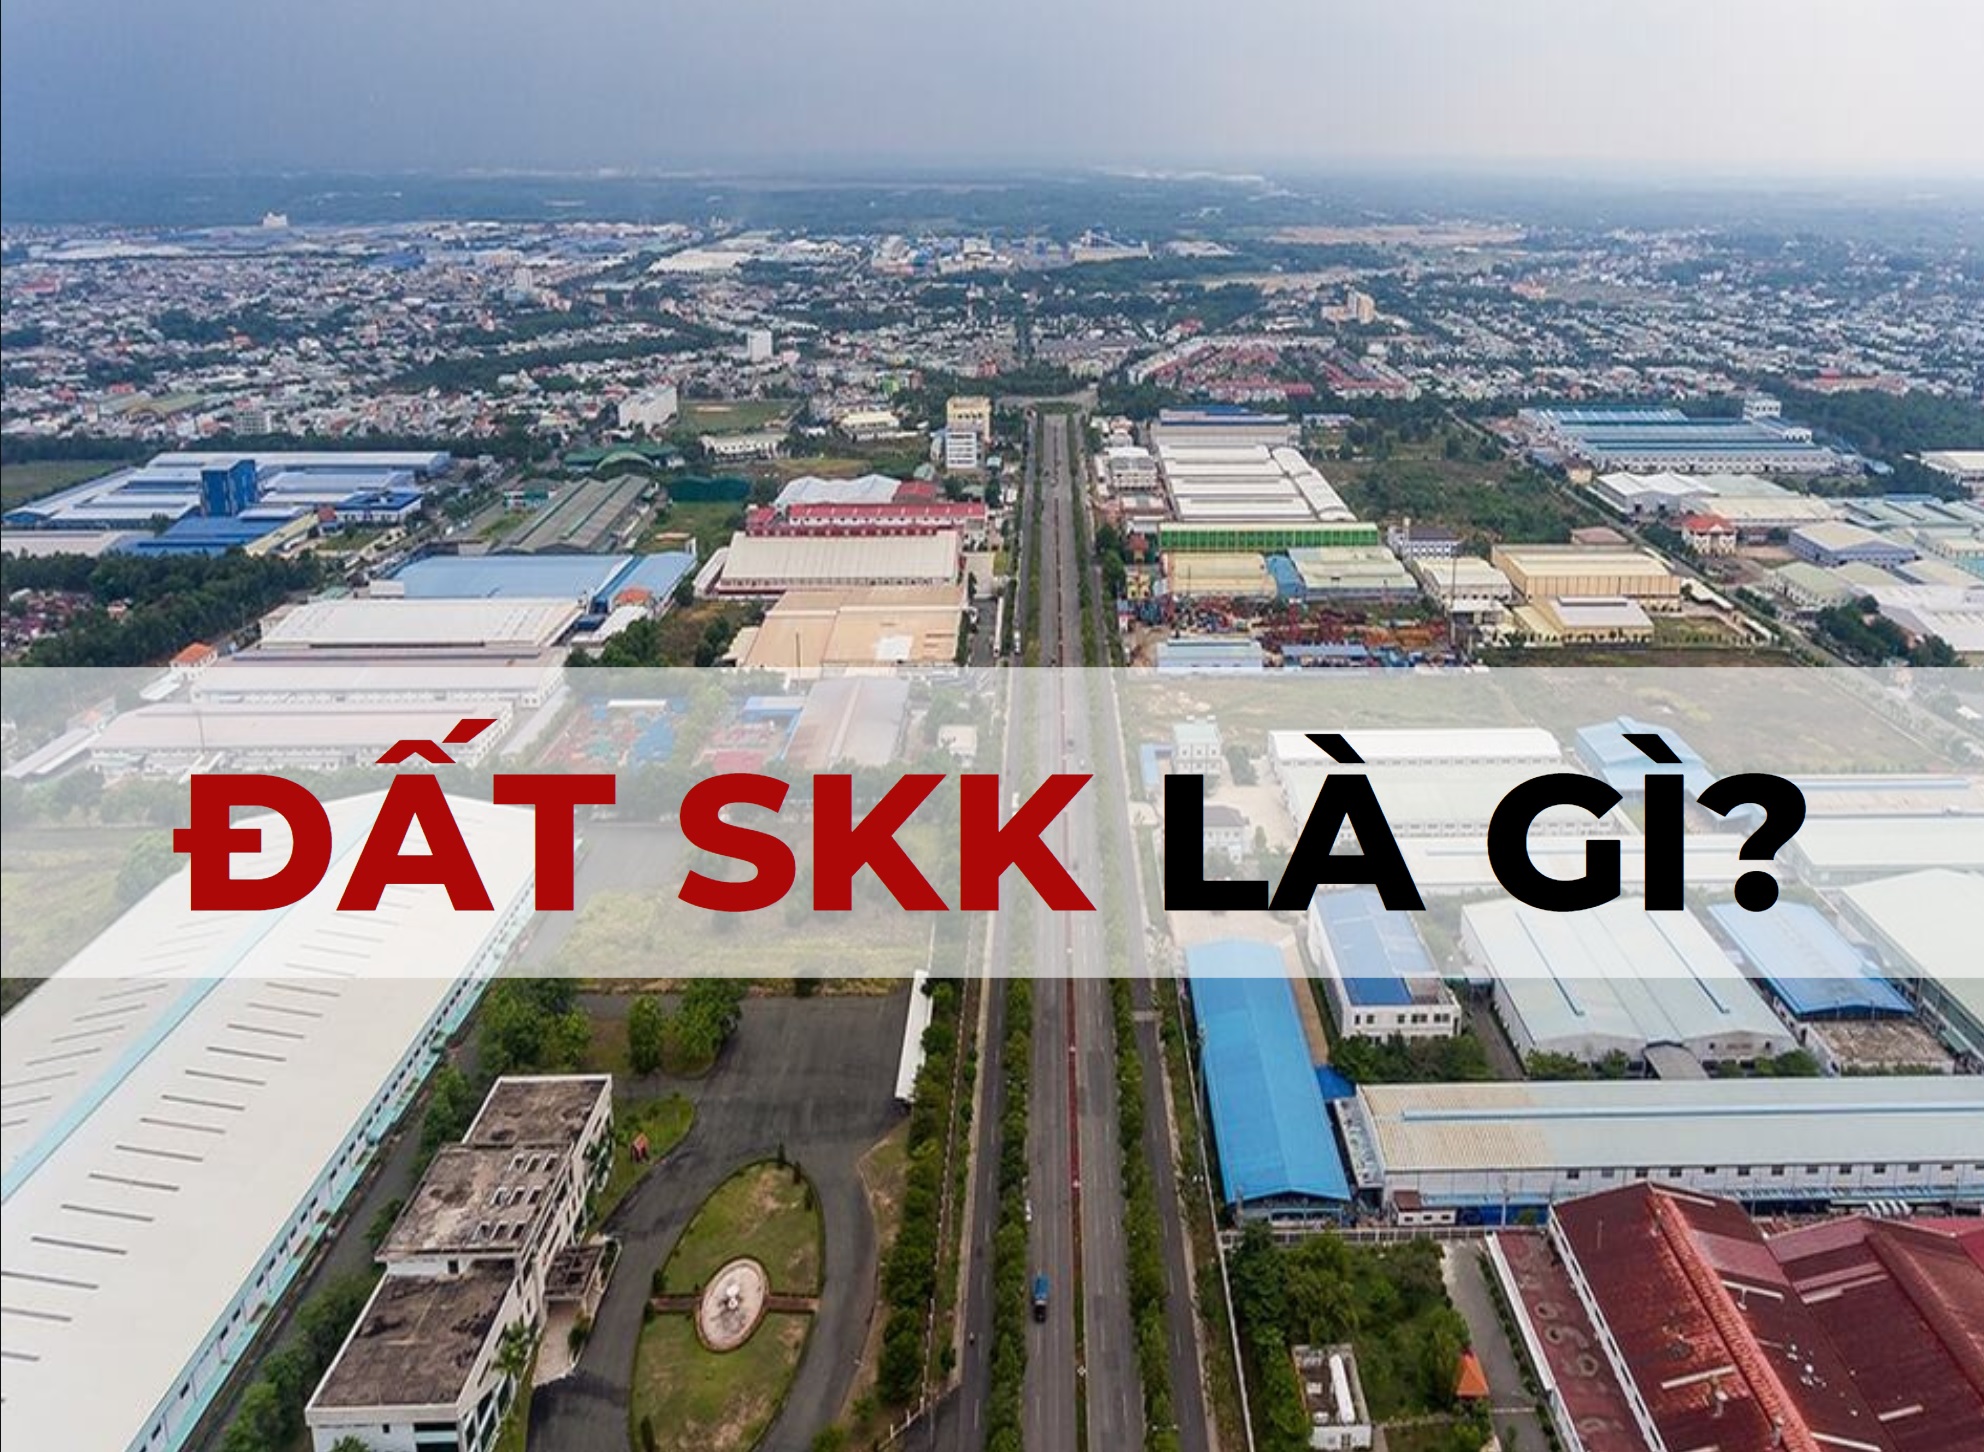 Đất SKK là ký hiệu viết tắt của đất khu công nghiệp